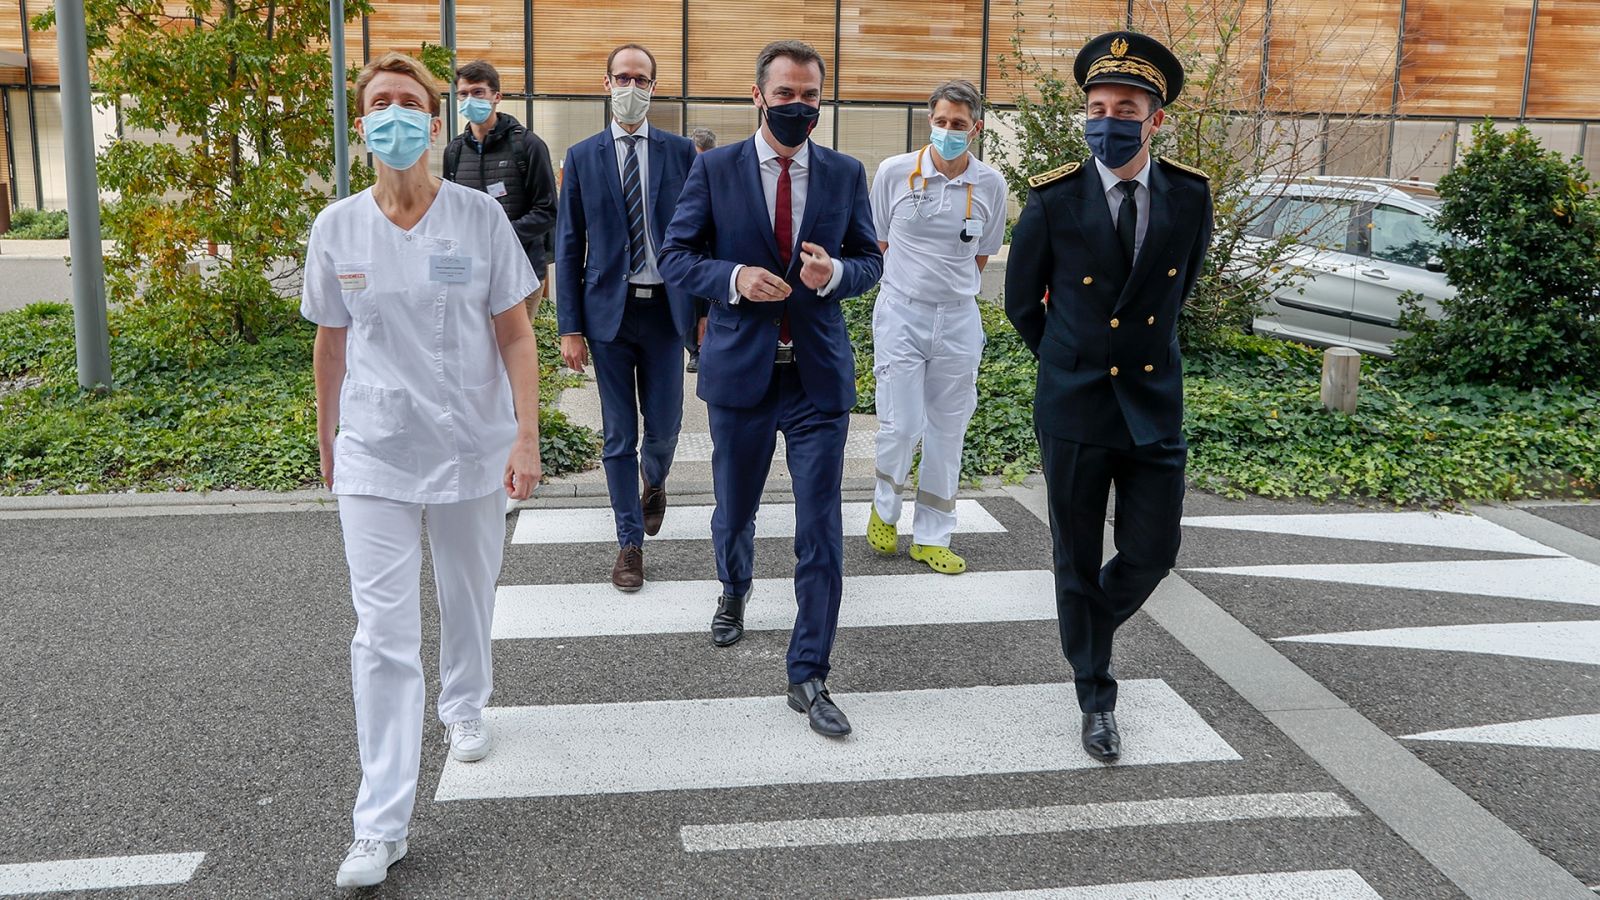 Monsieur Olivier Veran, ministre de la santé, a inauguré le 9 octobre 2020 l’hôpital Nord Franche Comté